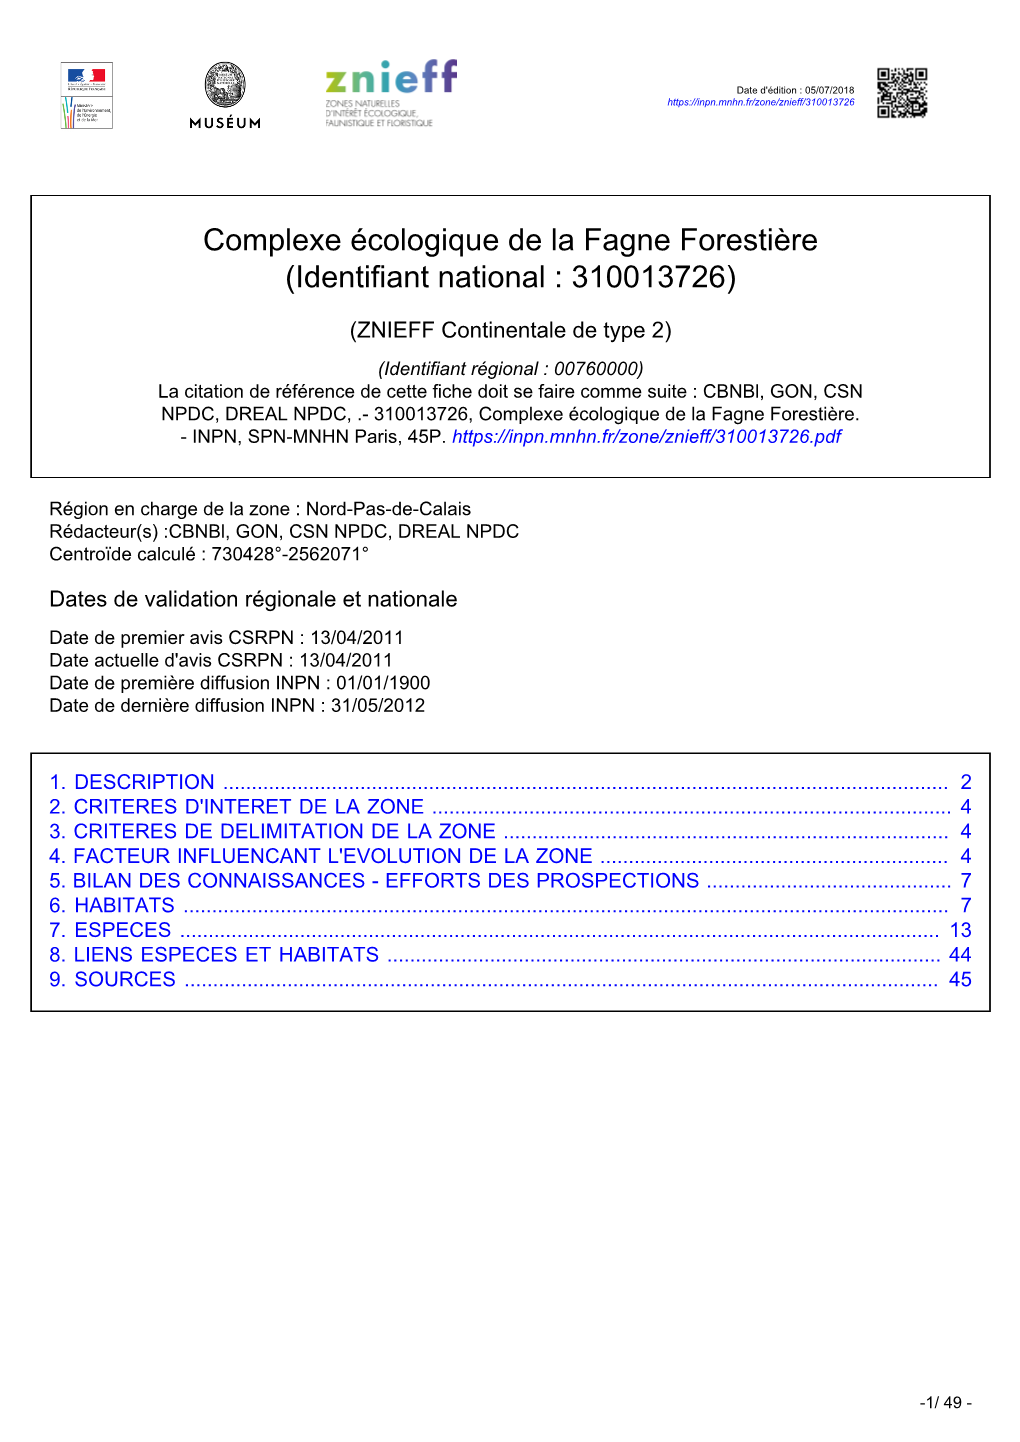 Complexe Écologique De La Fagne Forestière (Identifiant National : 310013726)